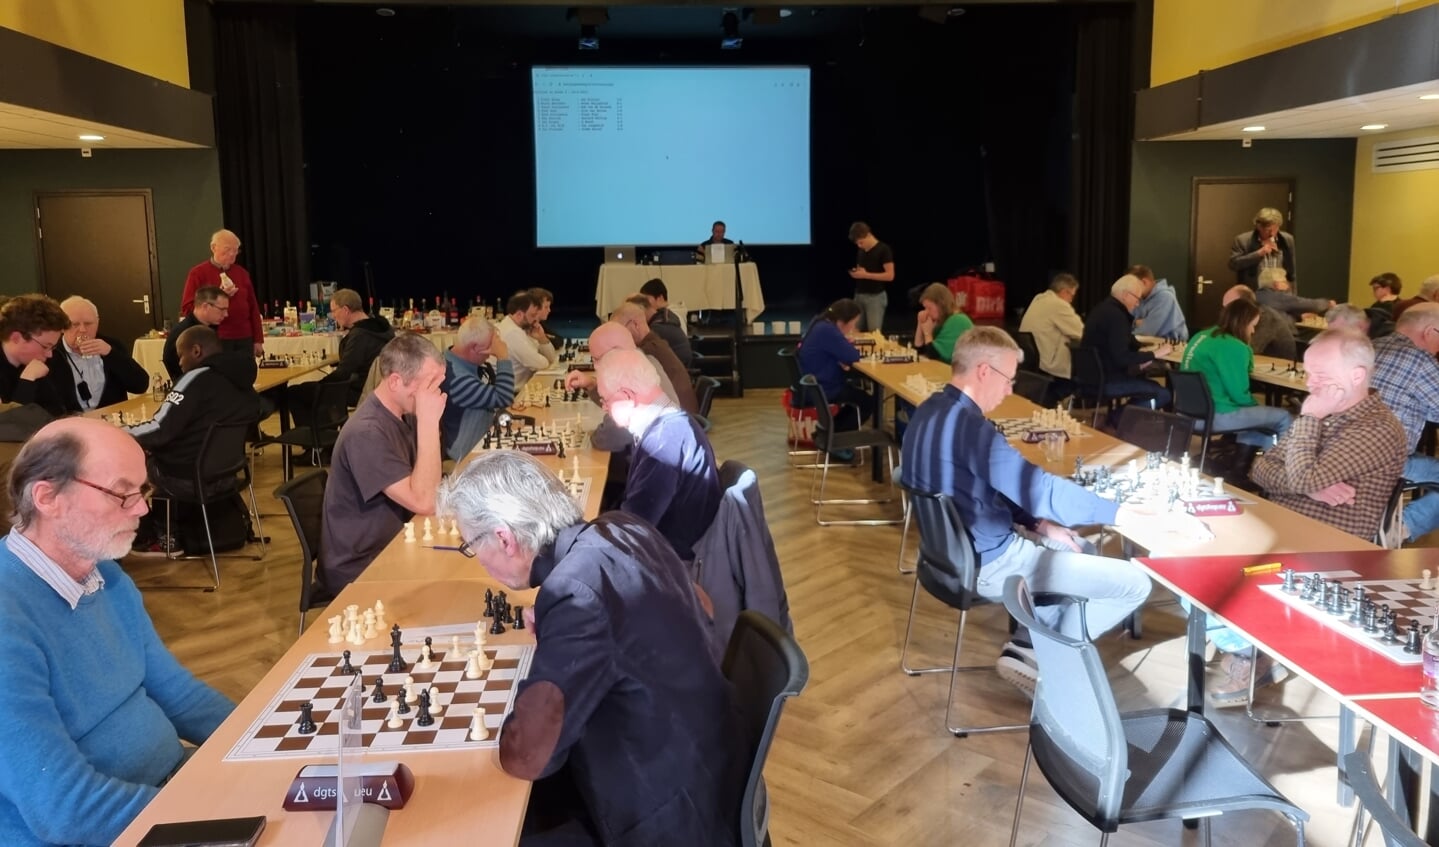 Overzicht van het schaaktoernooi zaterdag in Epe, met een goede opkomst van 65 deelnemers.